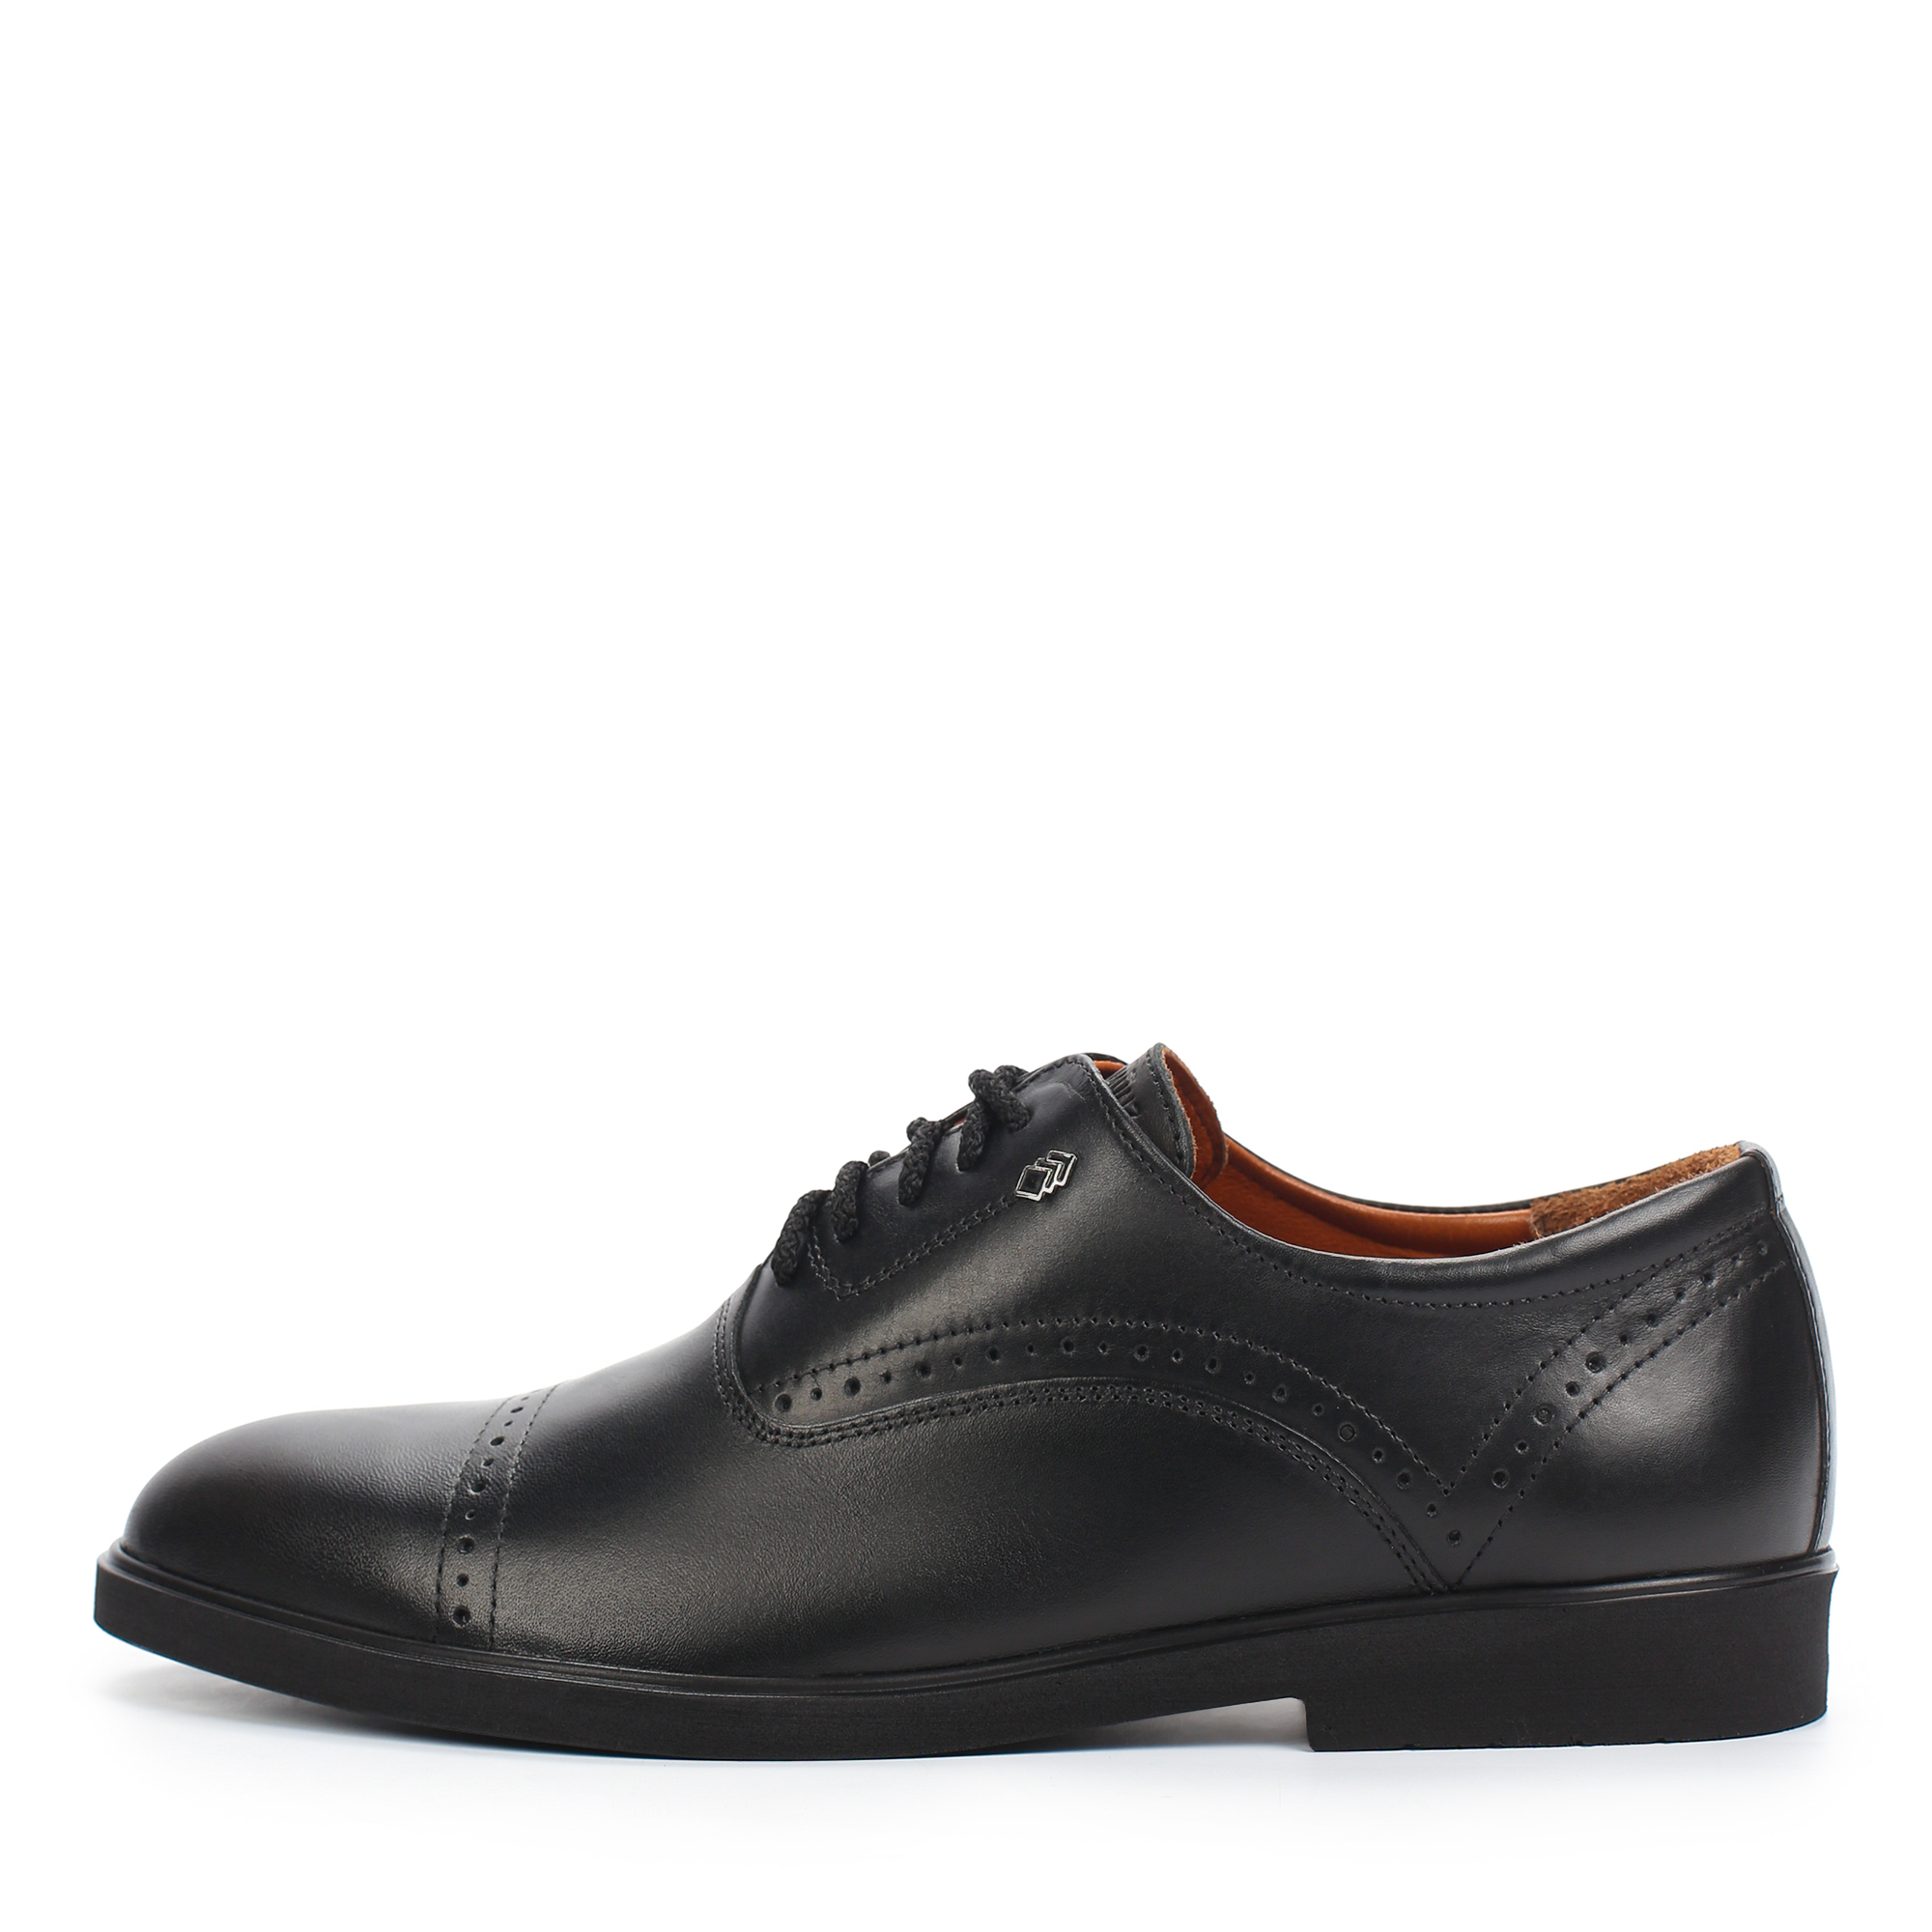 Туфли/полуботинки Thomas Munz 306-013B-1102, цвет черный, размер 41